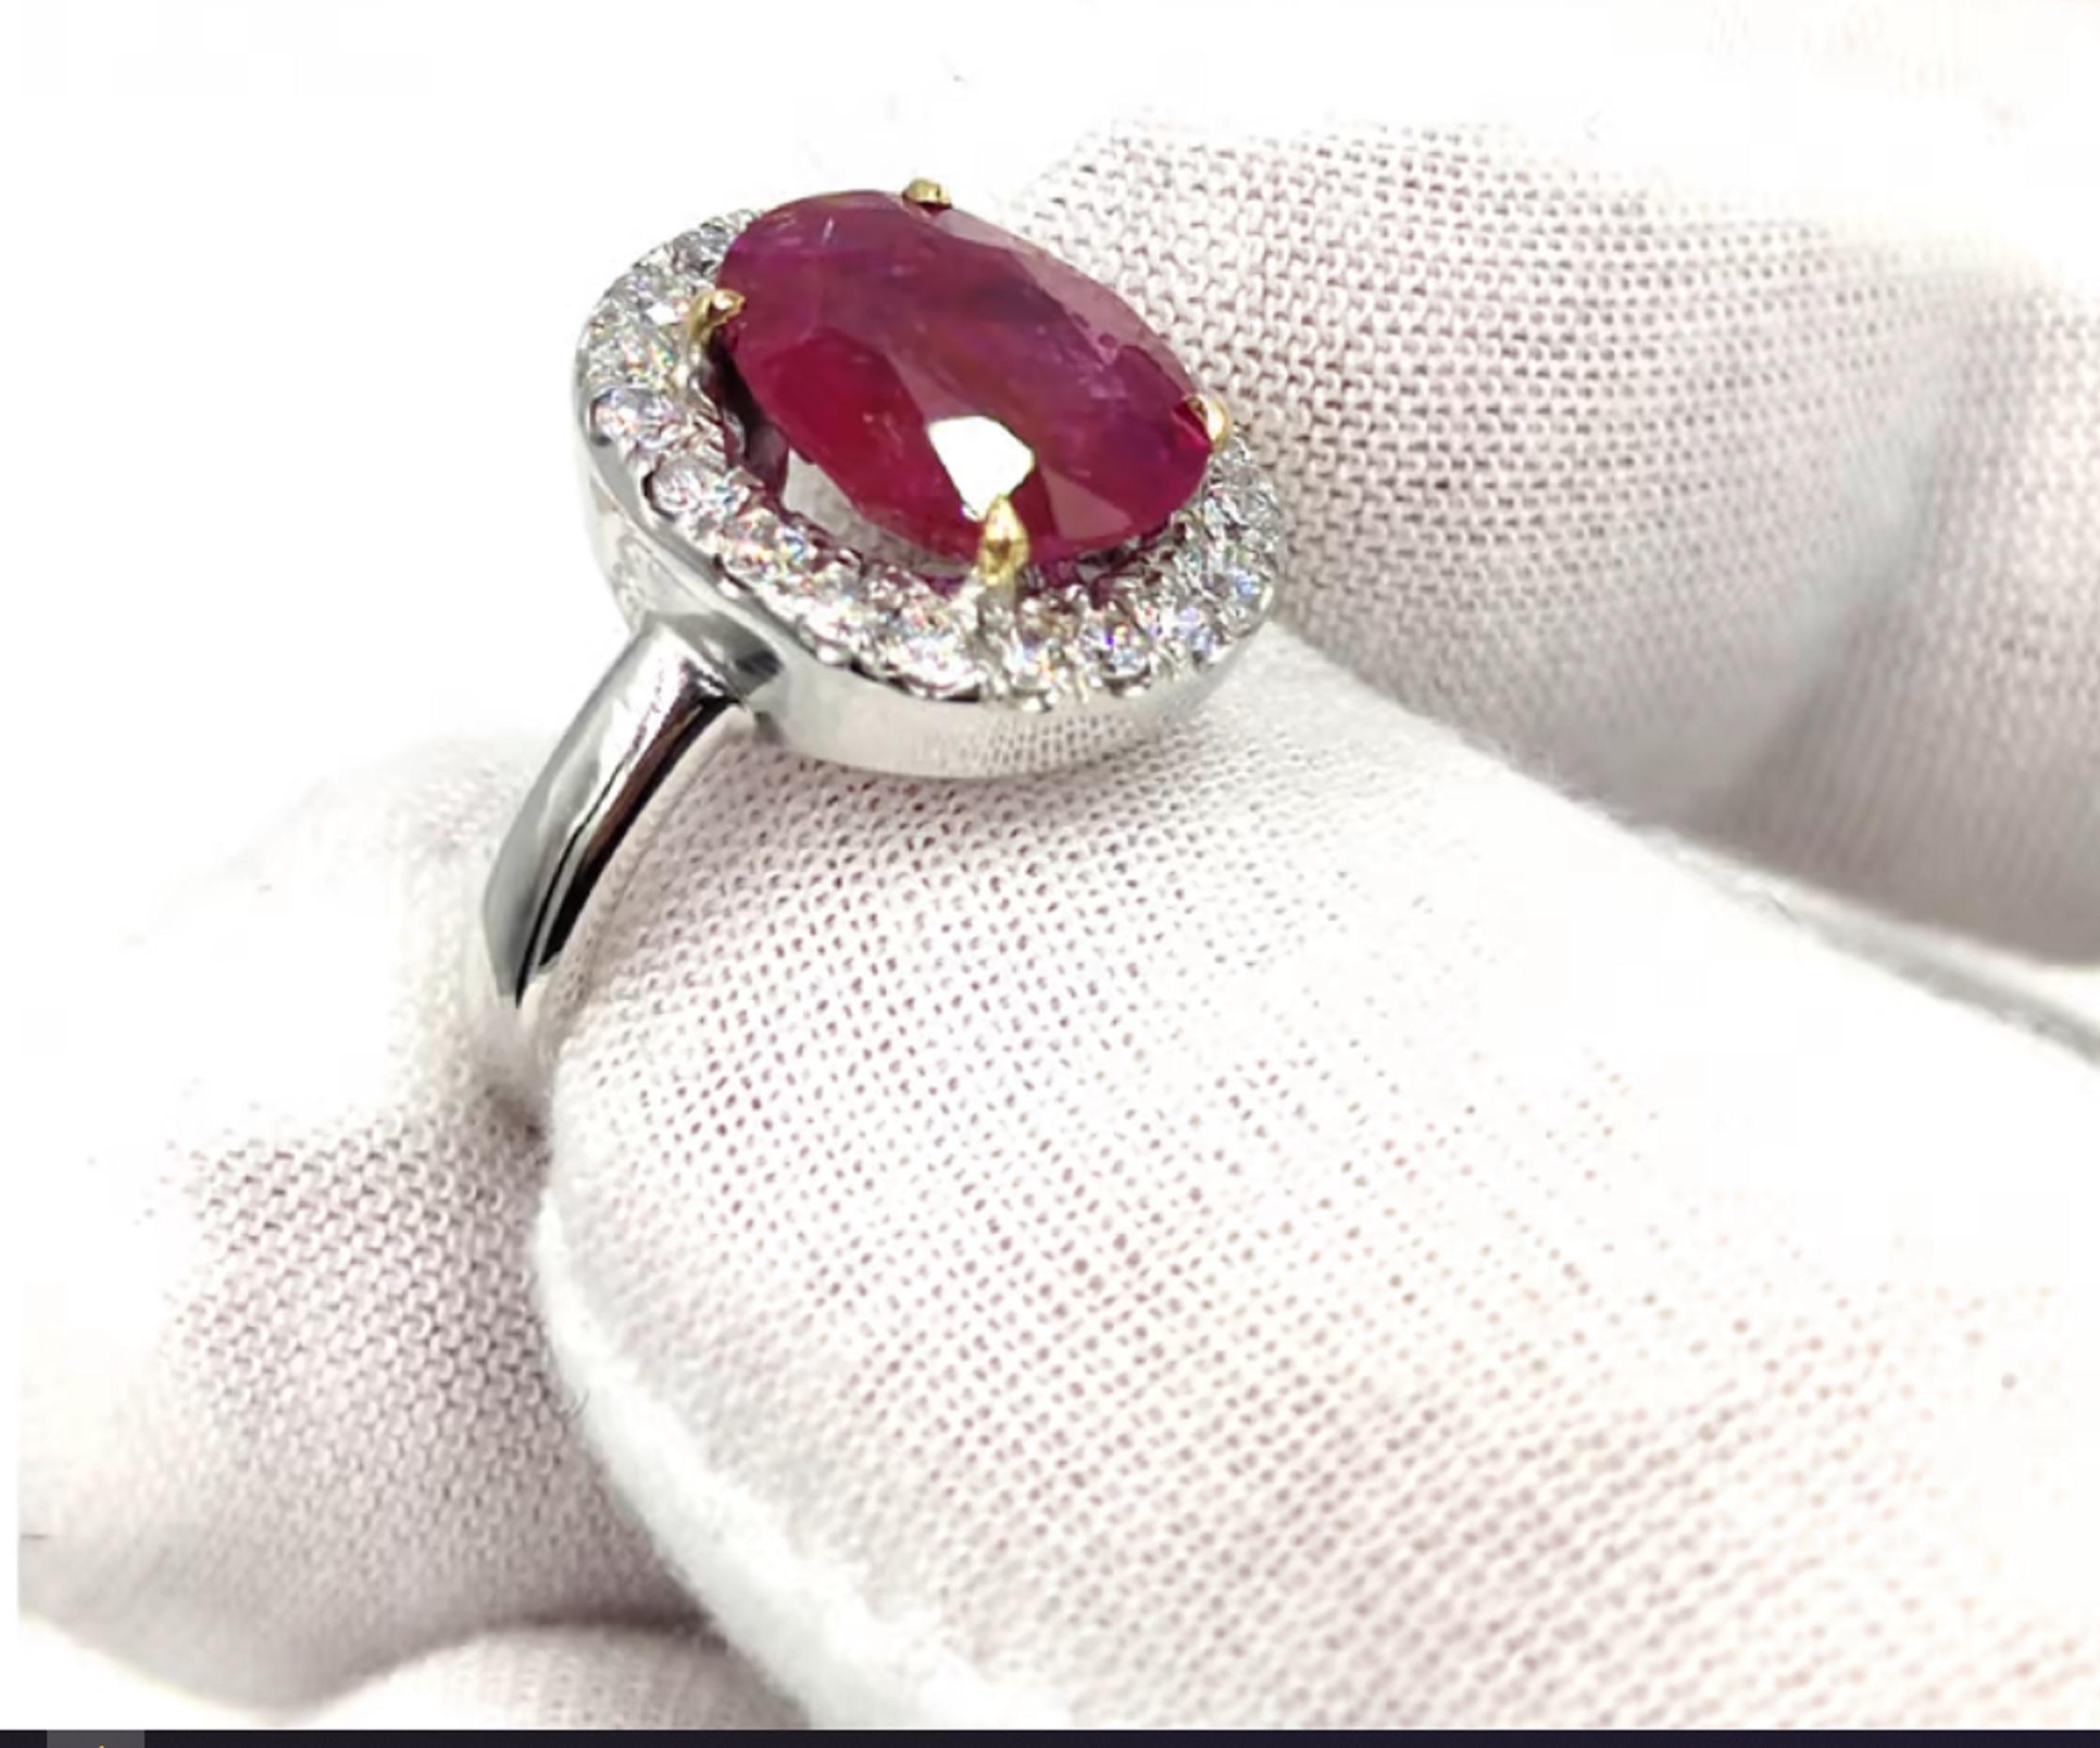 Étonnante bague en rubis et diamant de 7 carats naturels.

La bague est une merveille absolue et présente un halo exquis de diamants ronds de taille brillant.

Cette bague est unique en son genre et compte tenu de l'incroyable couleur rouge du